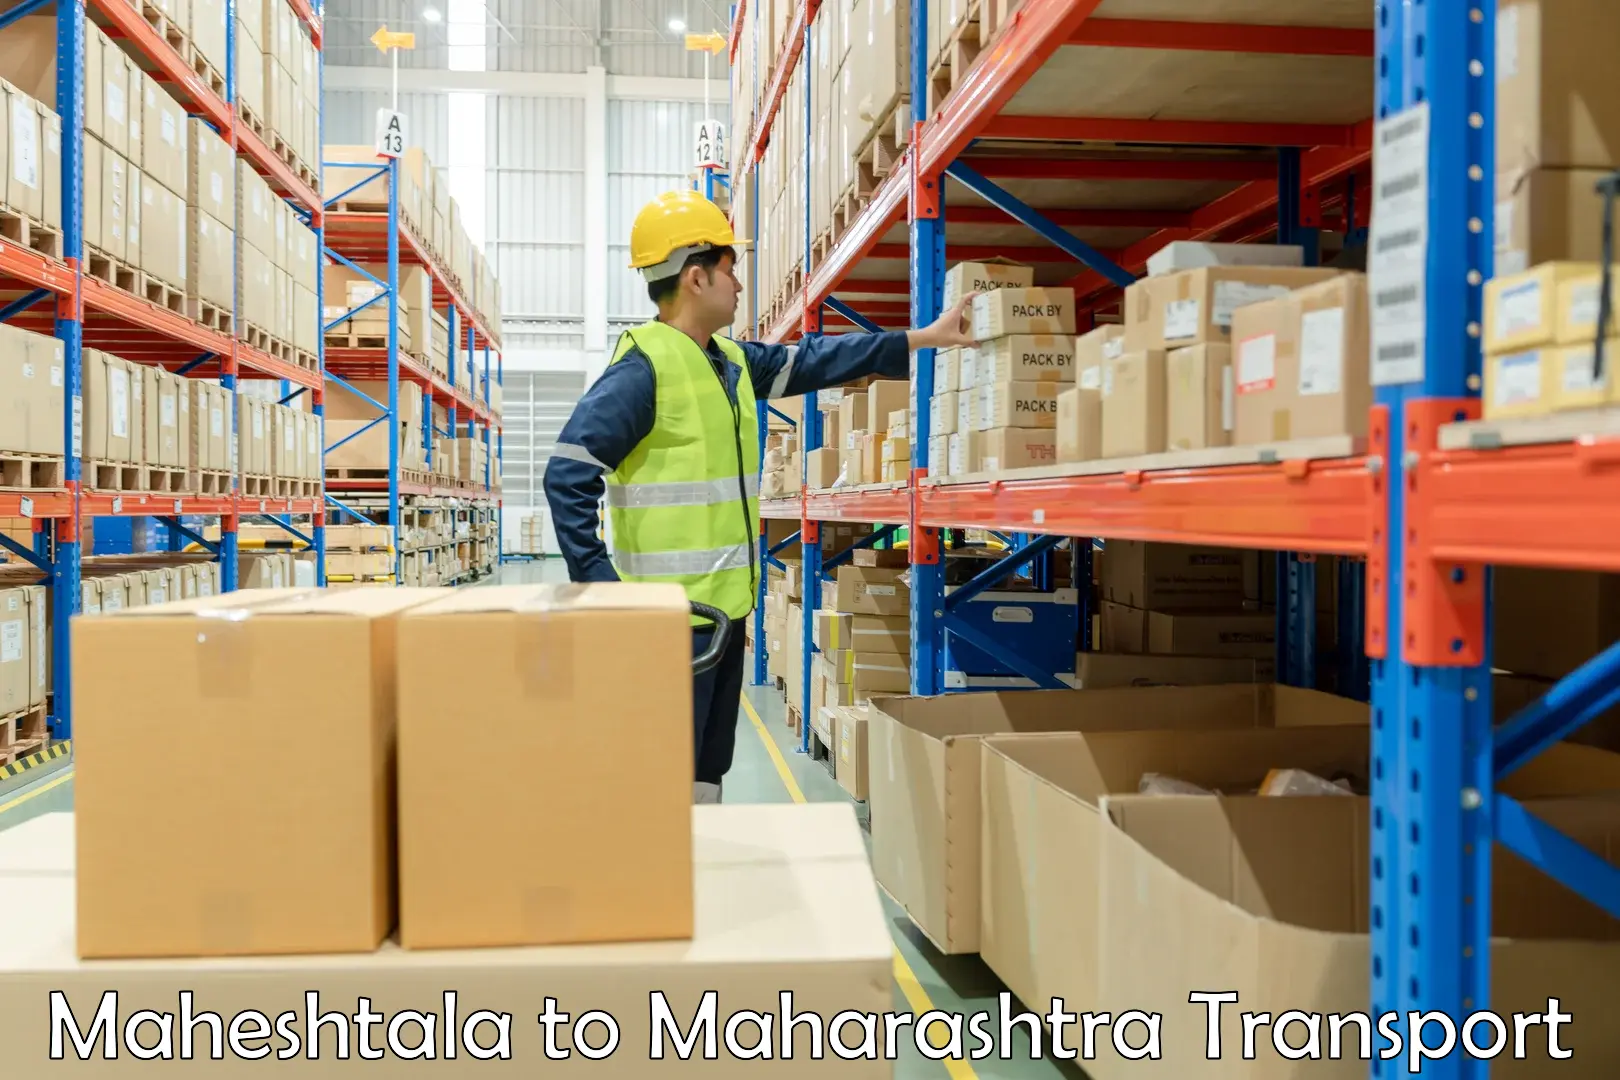 Daily parcel service transport in Maheshtala to Maharashtra